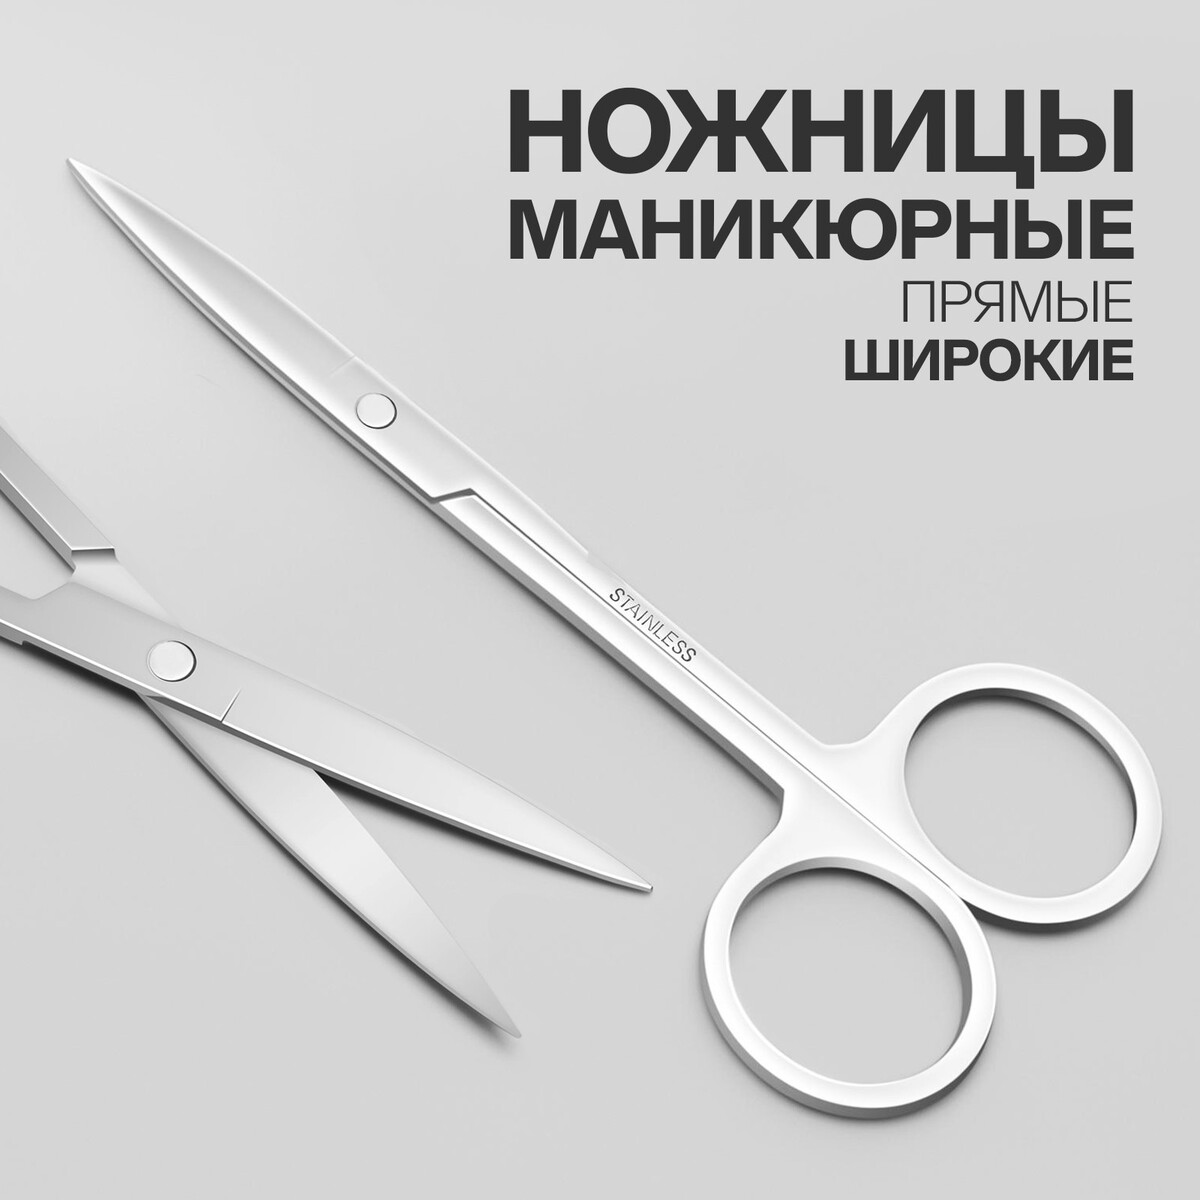 Ножницы маникюрные, прямые, широкие, 12 см, цвет серебристый ножницы маникюрные прямые узкие 9 5 см серебристый